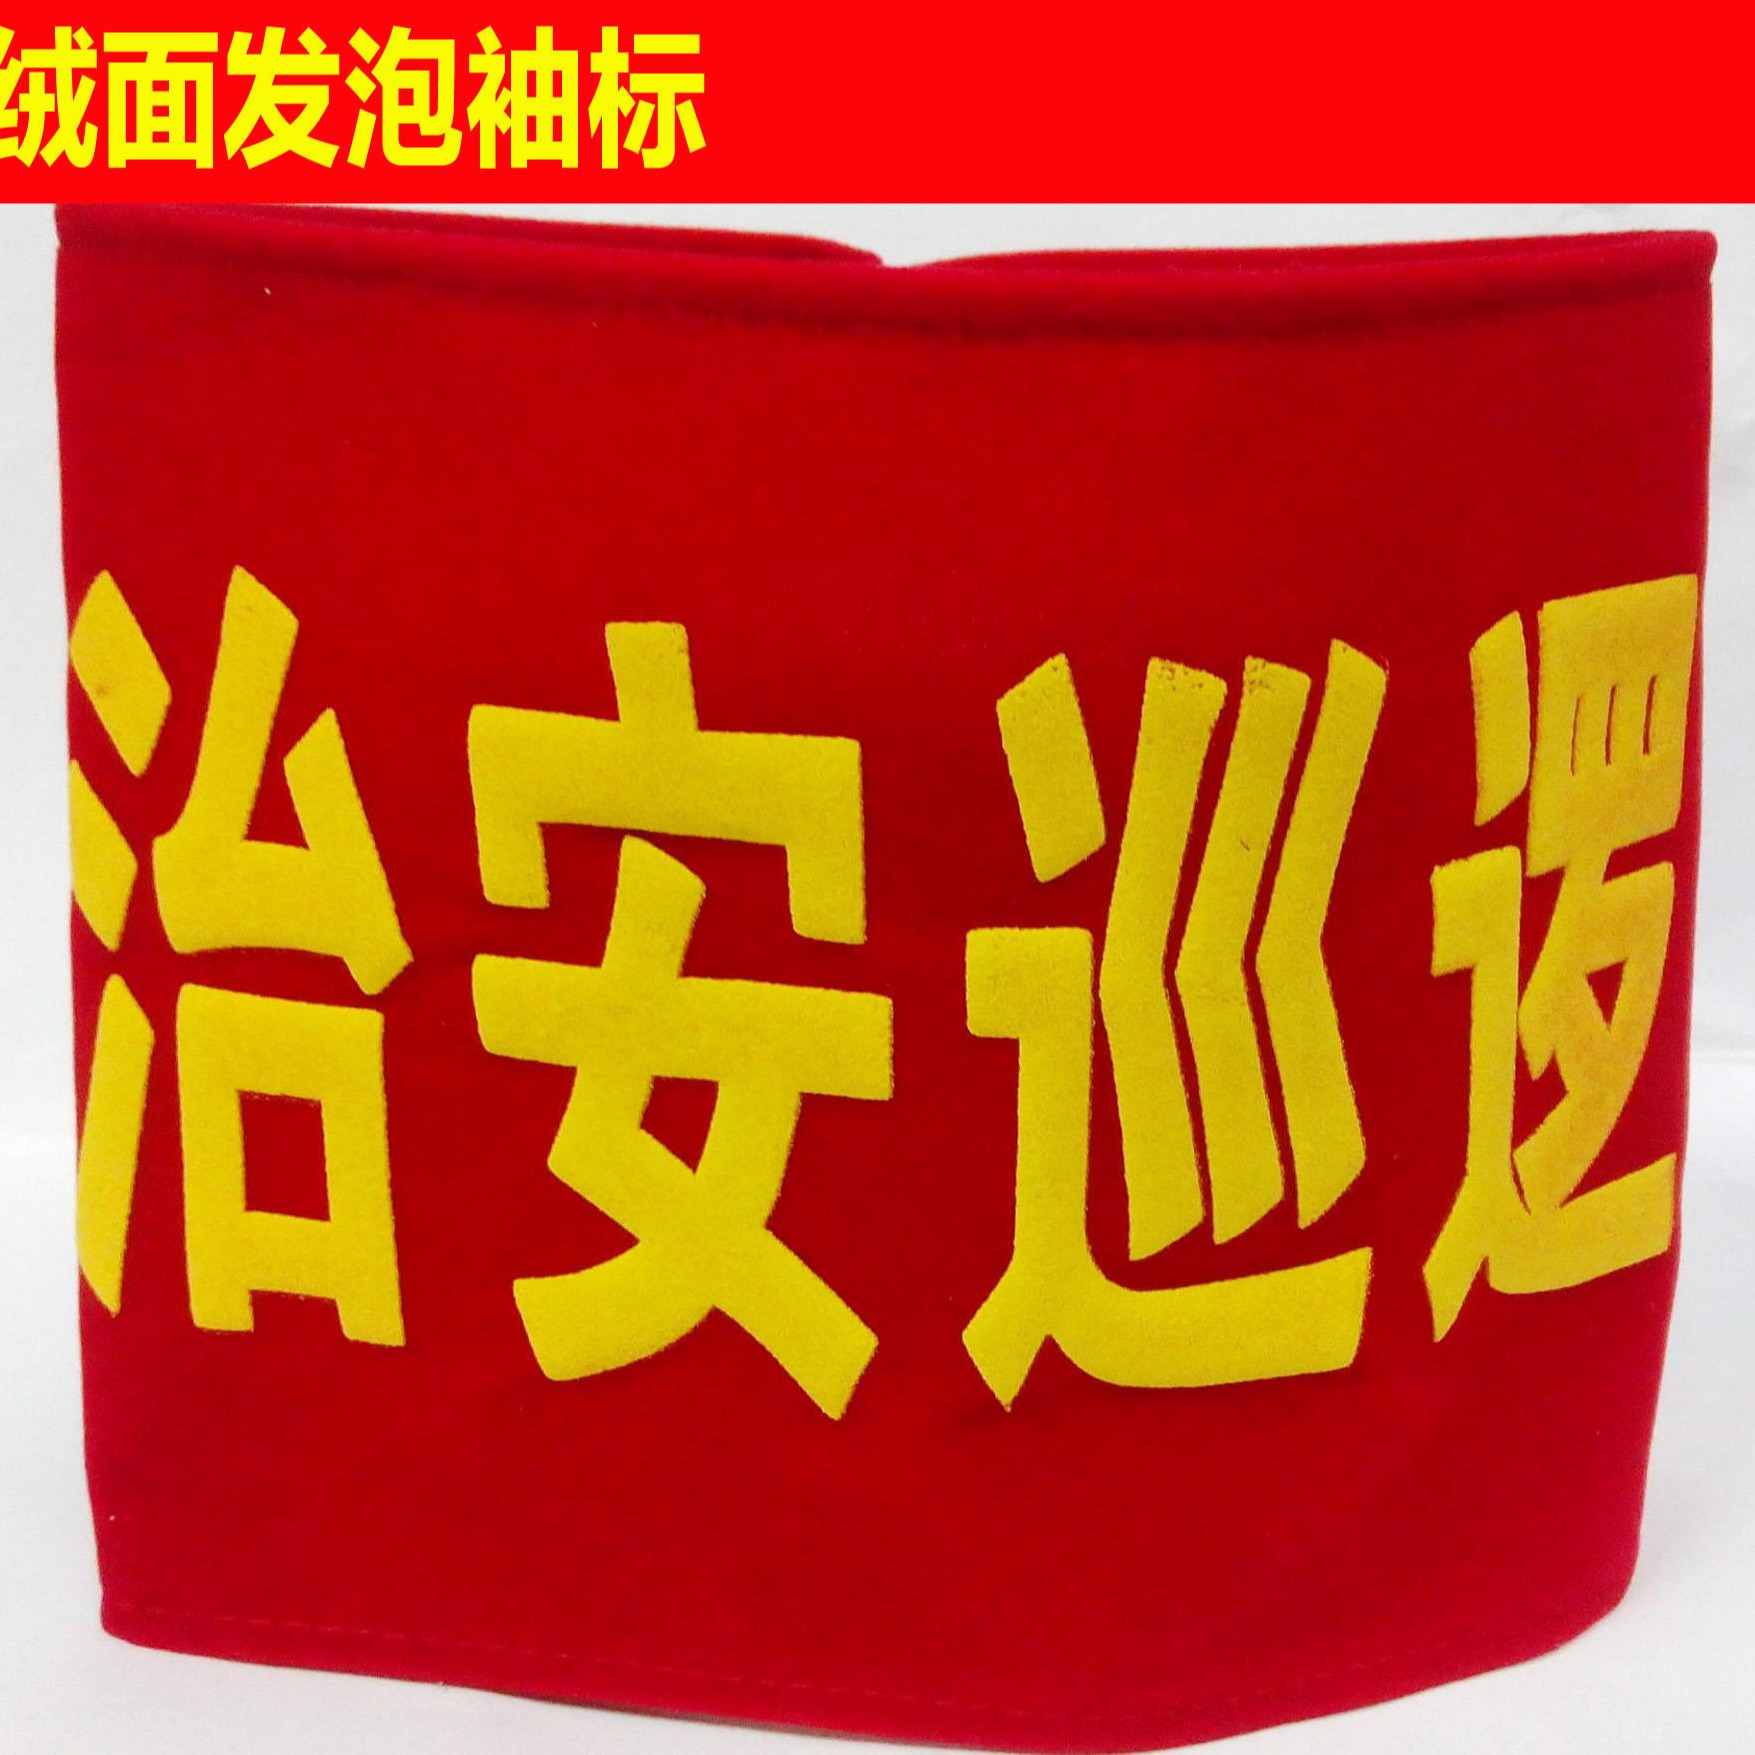 昆明春城志愿者袖标定制红袖章定做管理员执勤安全员红袖标队长订做